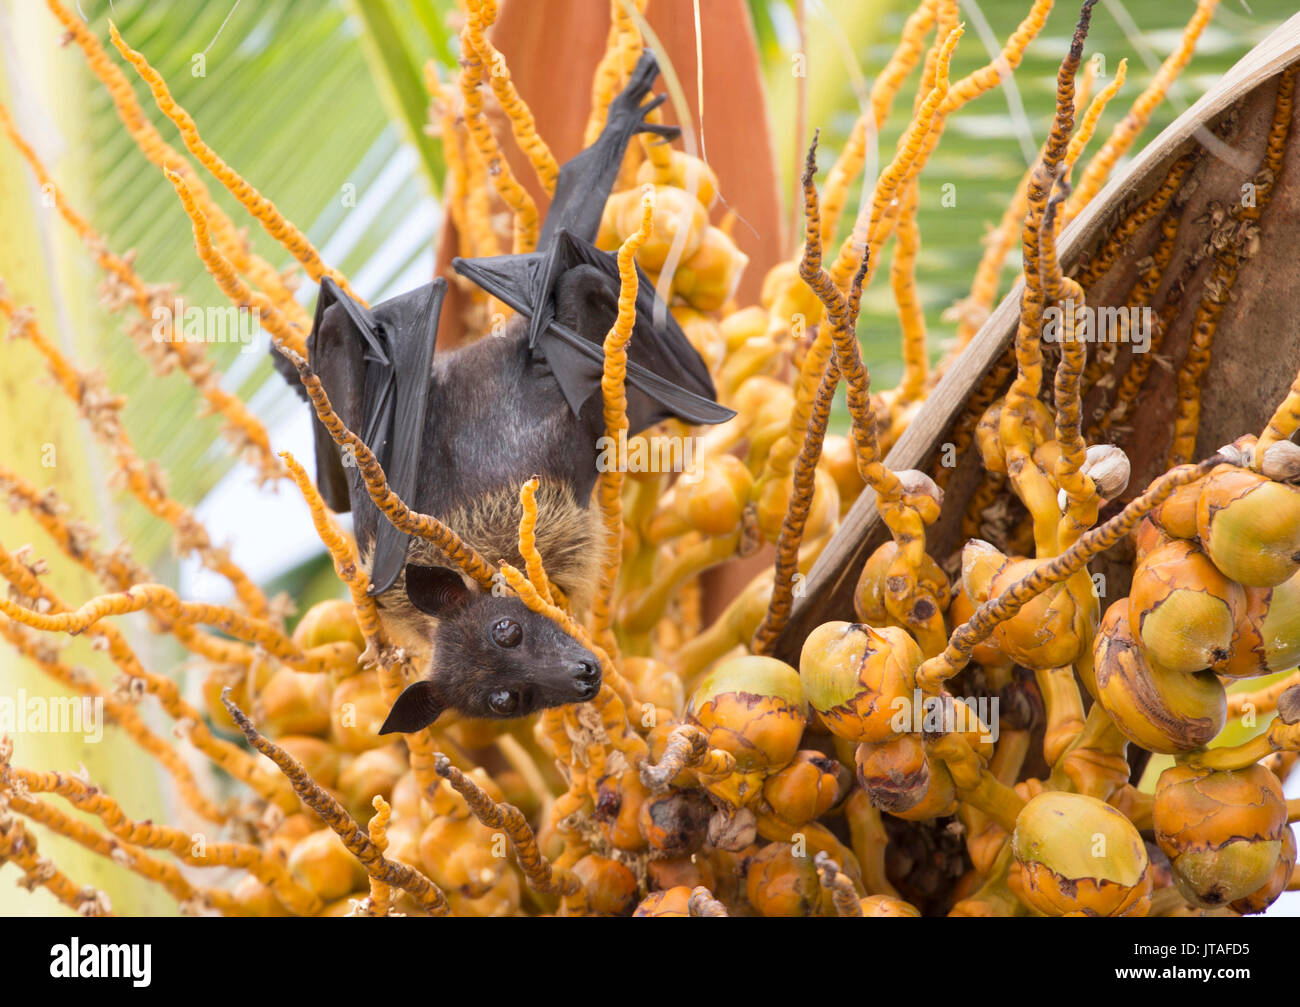 Fruit bat en palmier, Bodu Hithi, l'atoll de Baa, République des Maldives, l'Océan Indien, l'Asie Banque D'Images